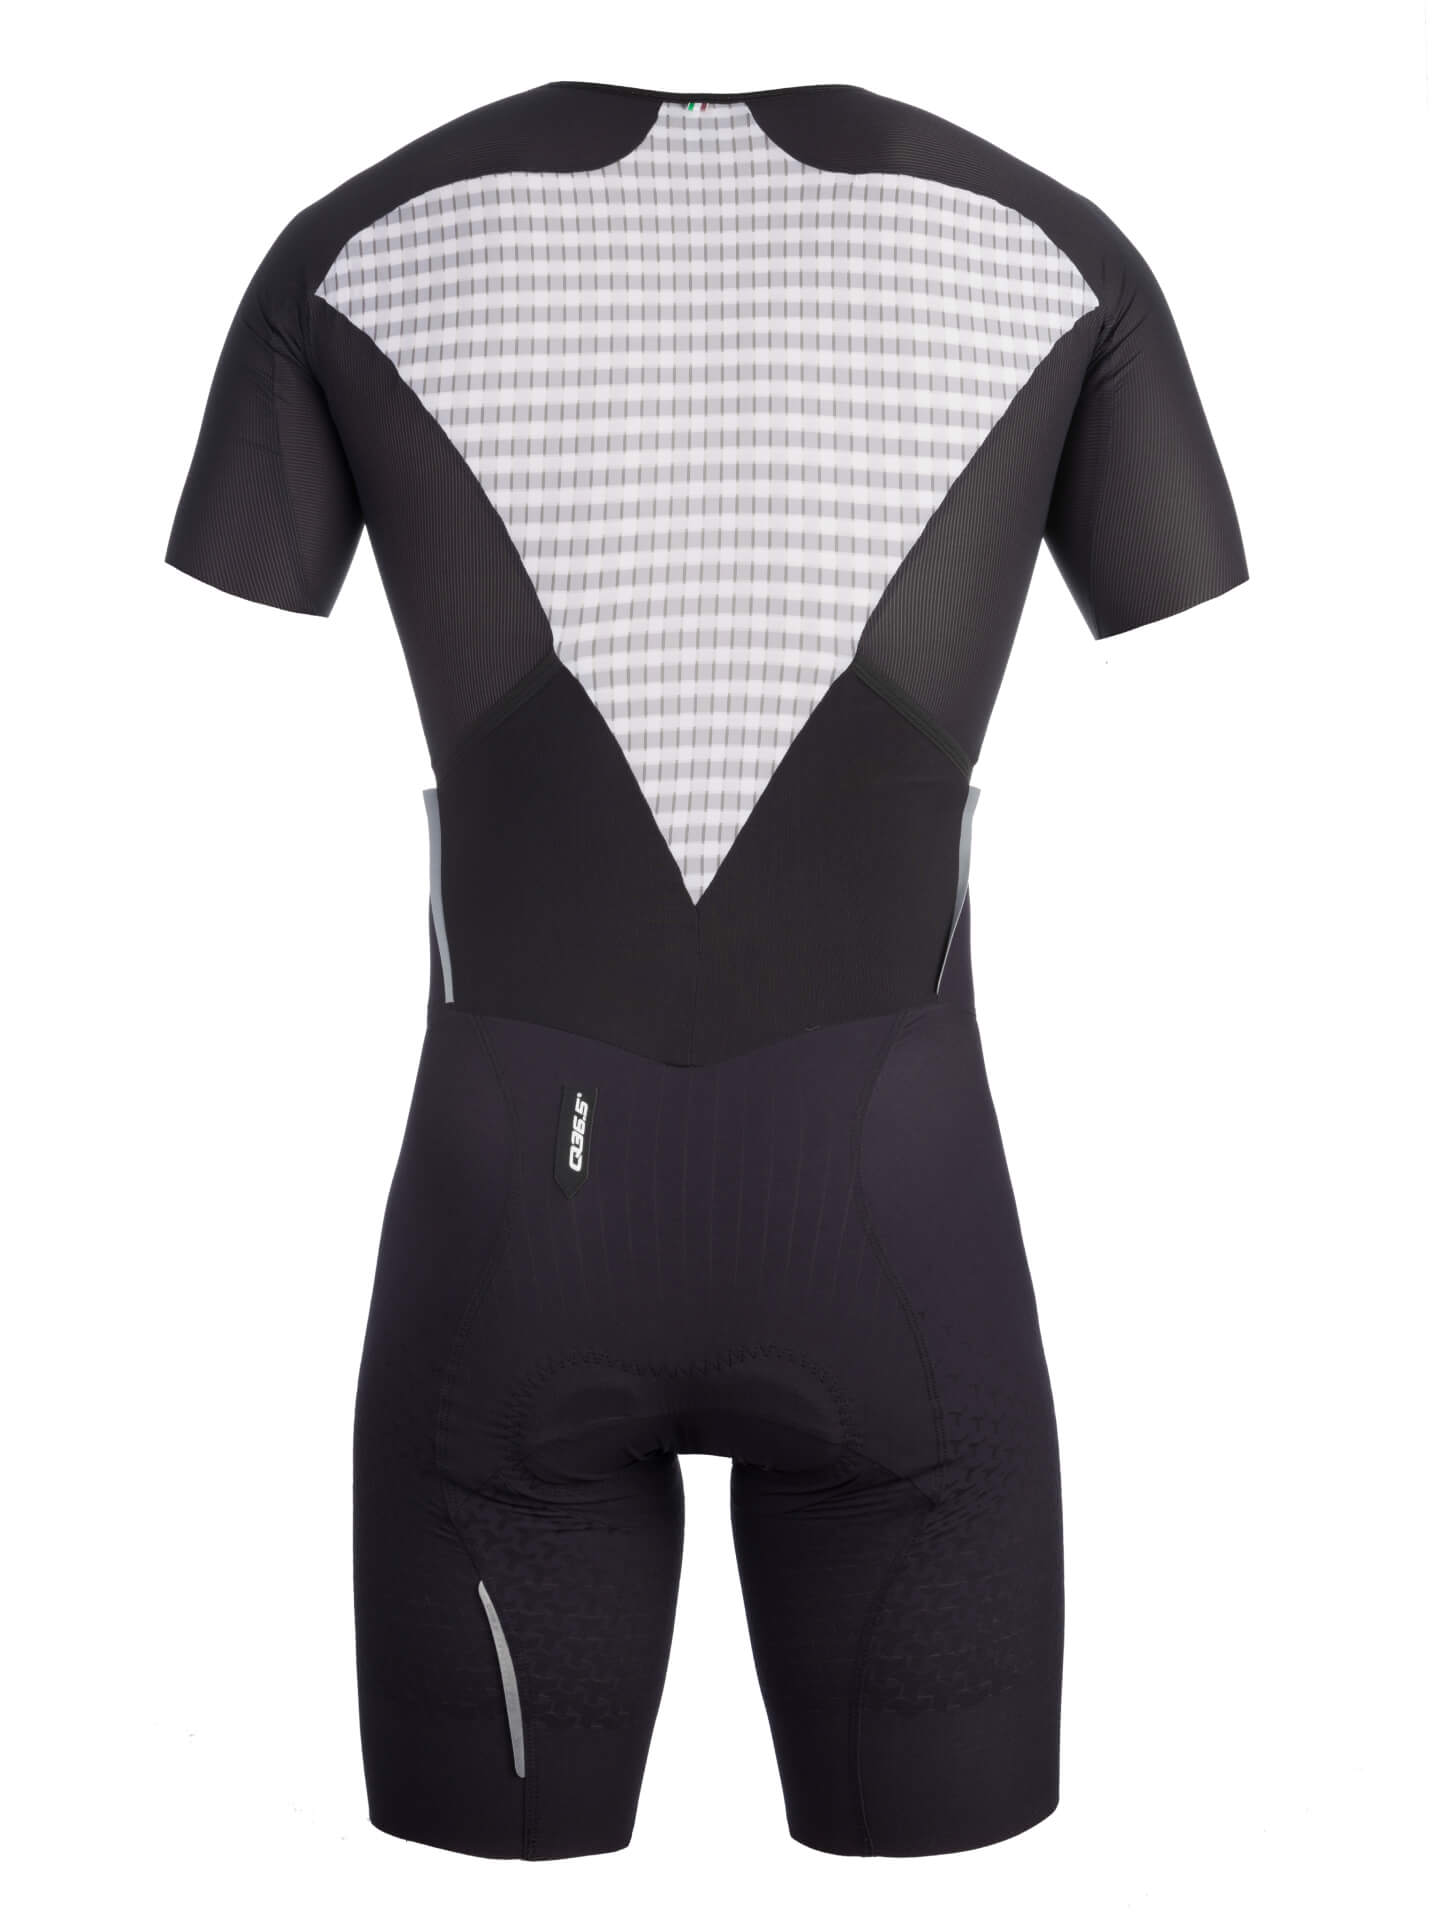 Q36.5 Skinsuit? : r/CyclingFashion